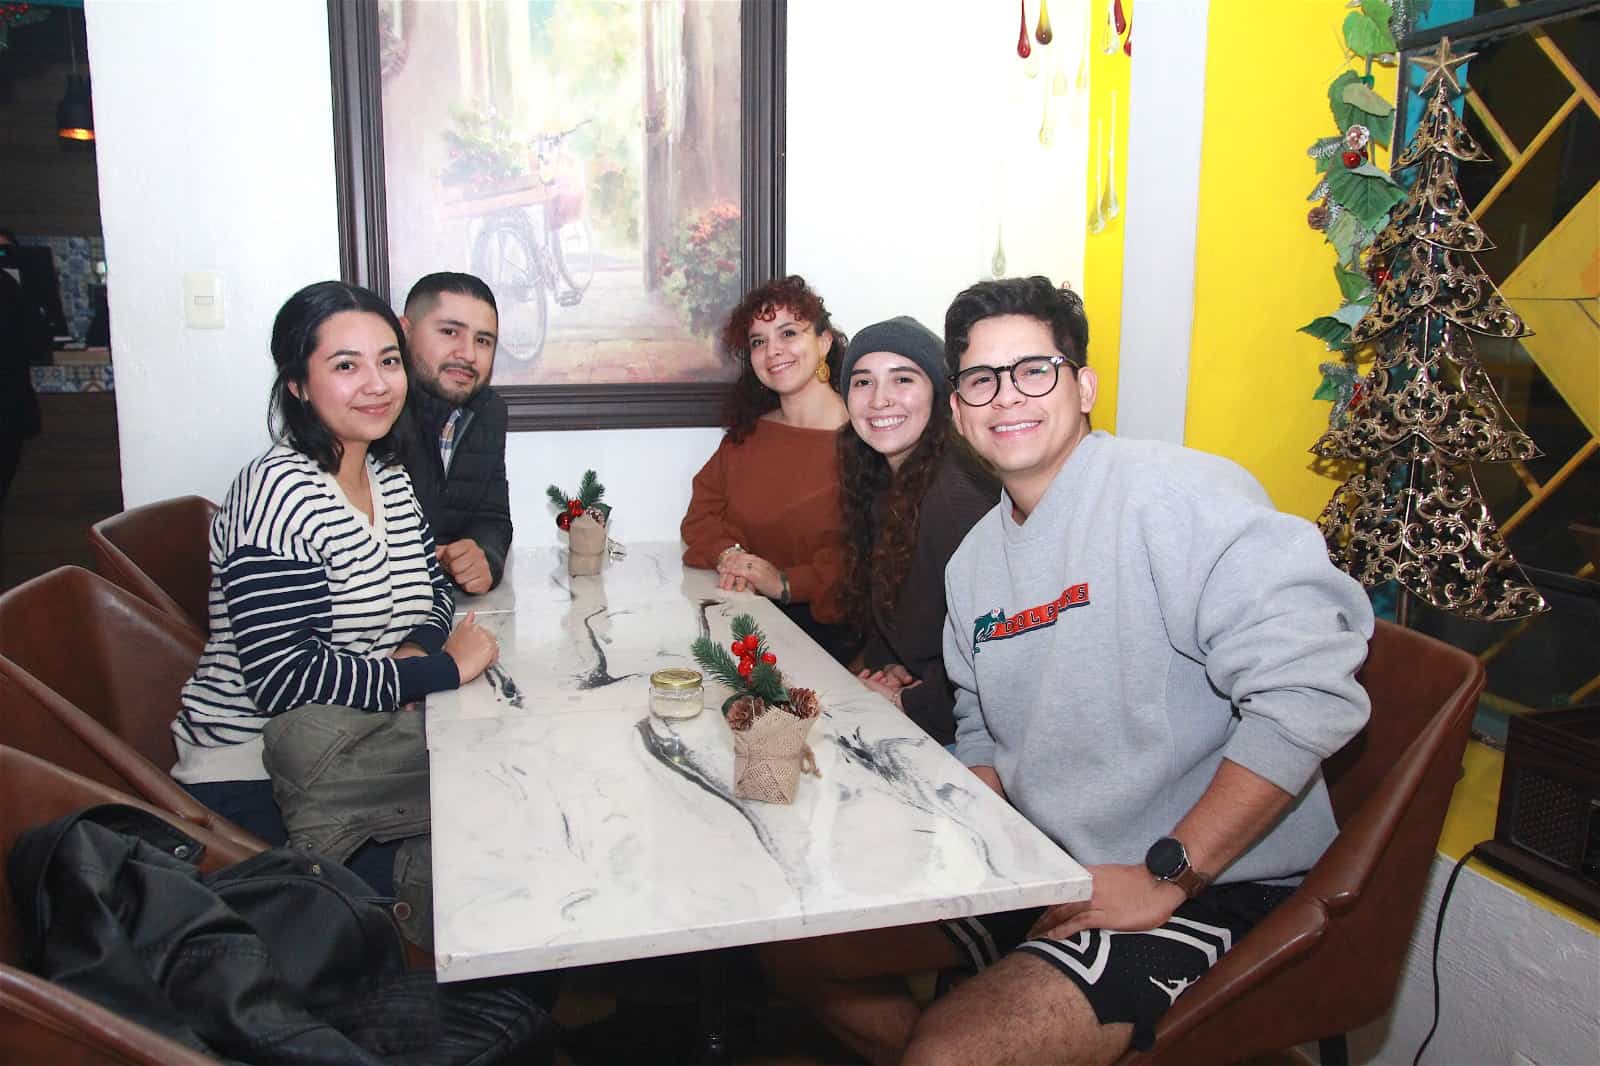 Buena charla entre amigos En Casa Garmendia, Café y Churrería